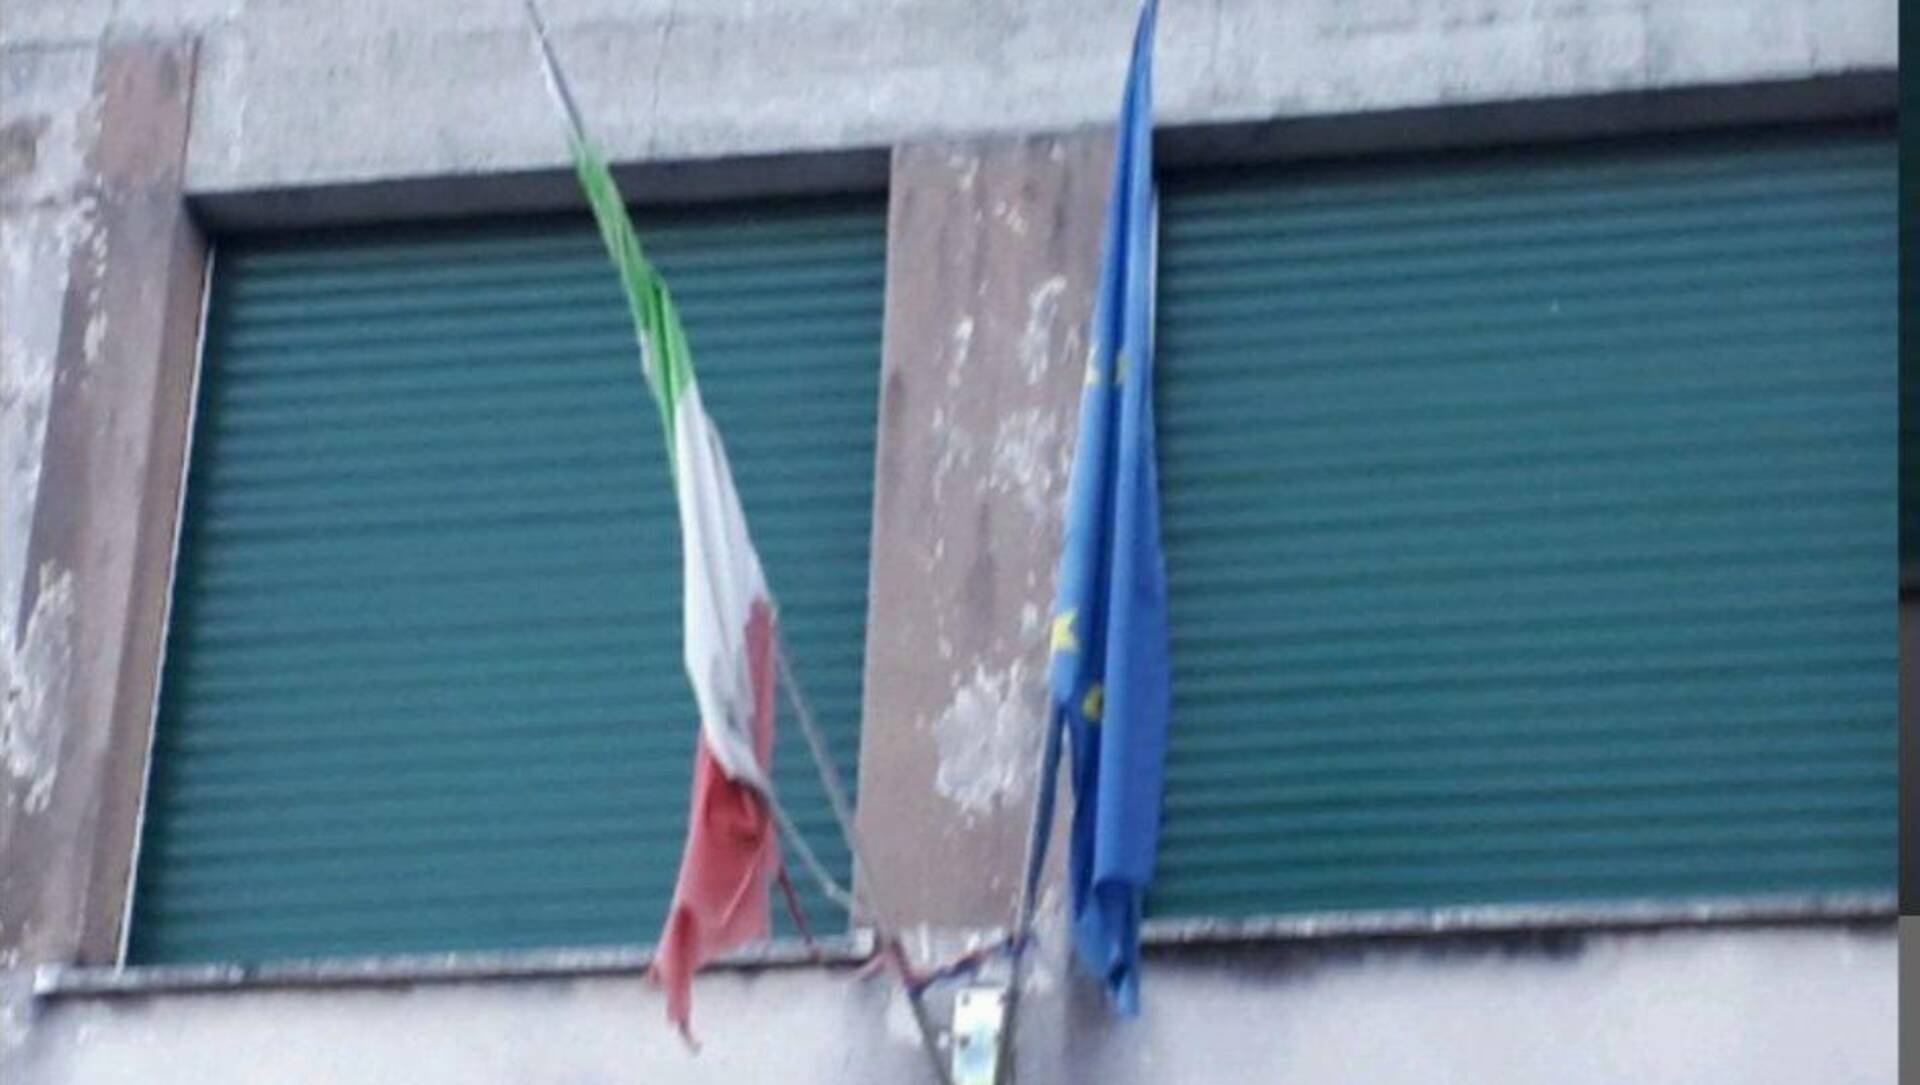 Saronno, bandiere scolorite e strappate davanti alle scuole, l’appello: “Cambiatele almeno per il 2 giugno”